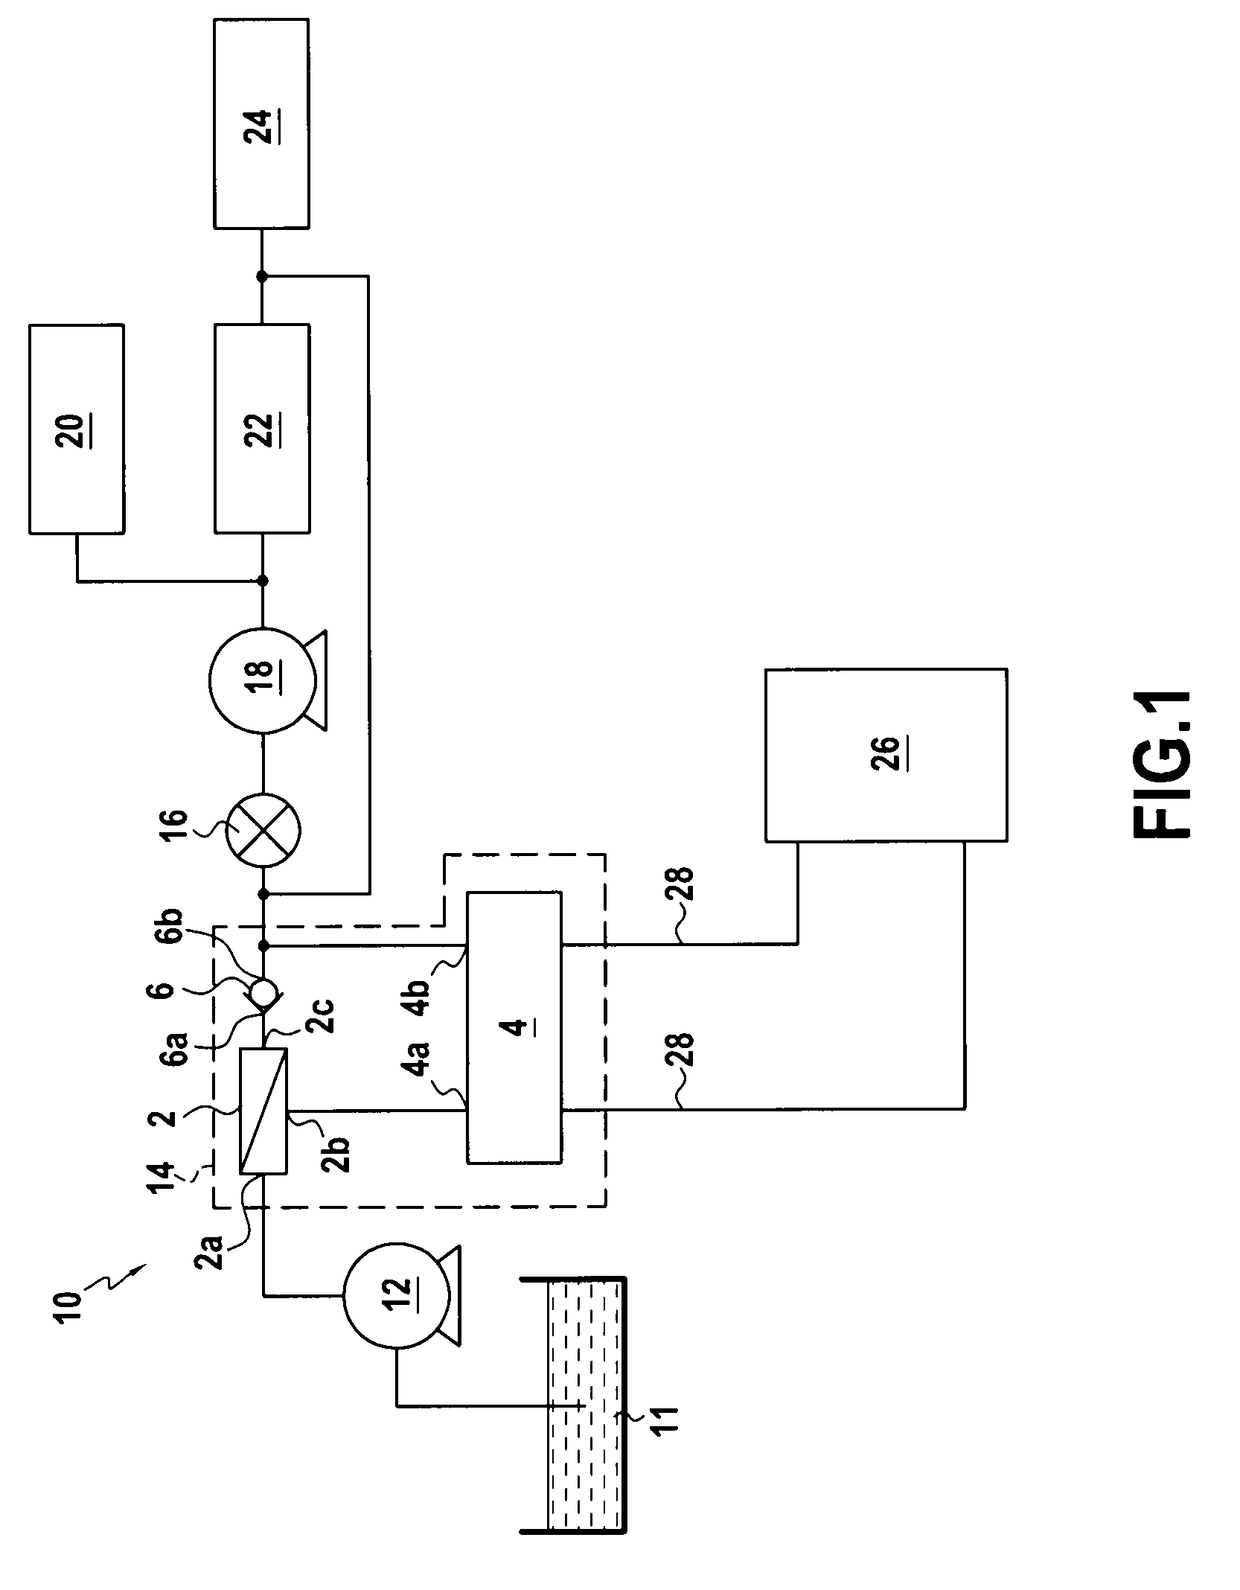 Heat exchanger system